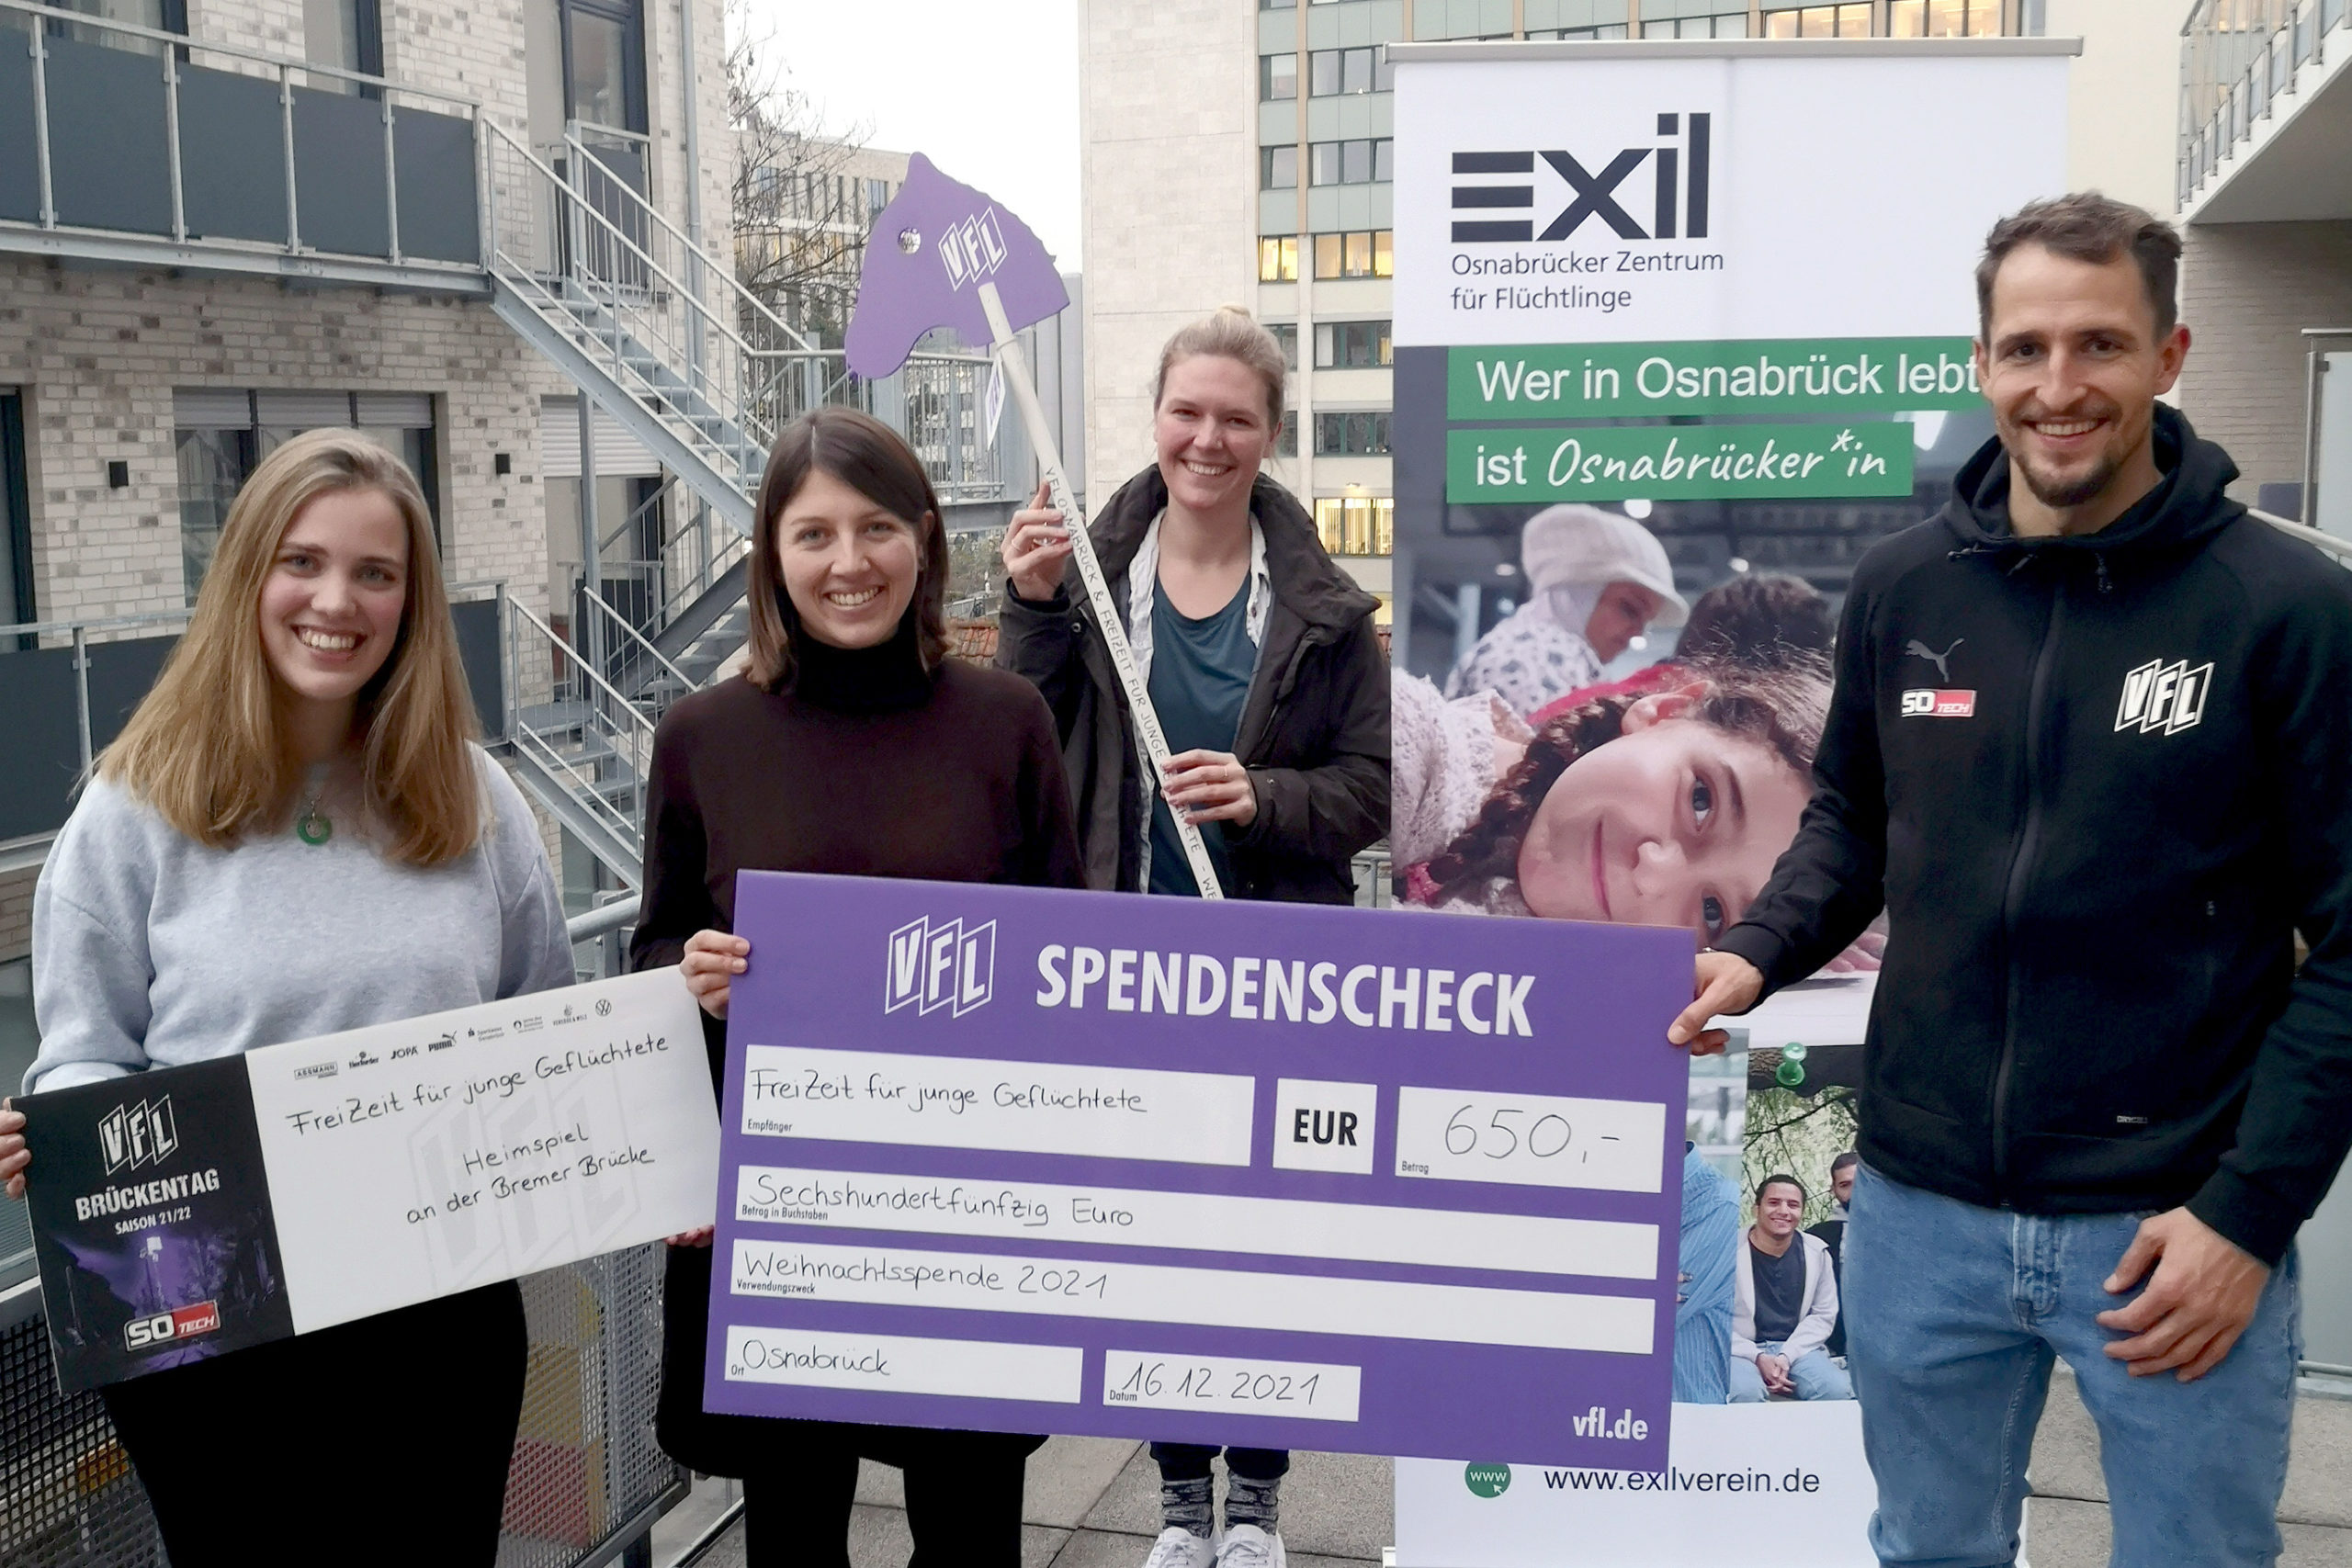 VfL Osnabrück-Profi Ulrich Taffertshofer überreicht Spendenscheck an Exil-Projekt Freizeit für junge Geflüchtete